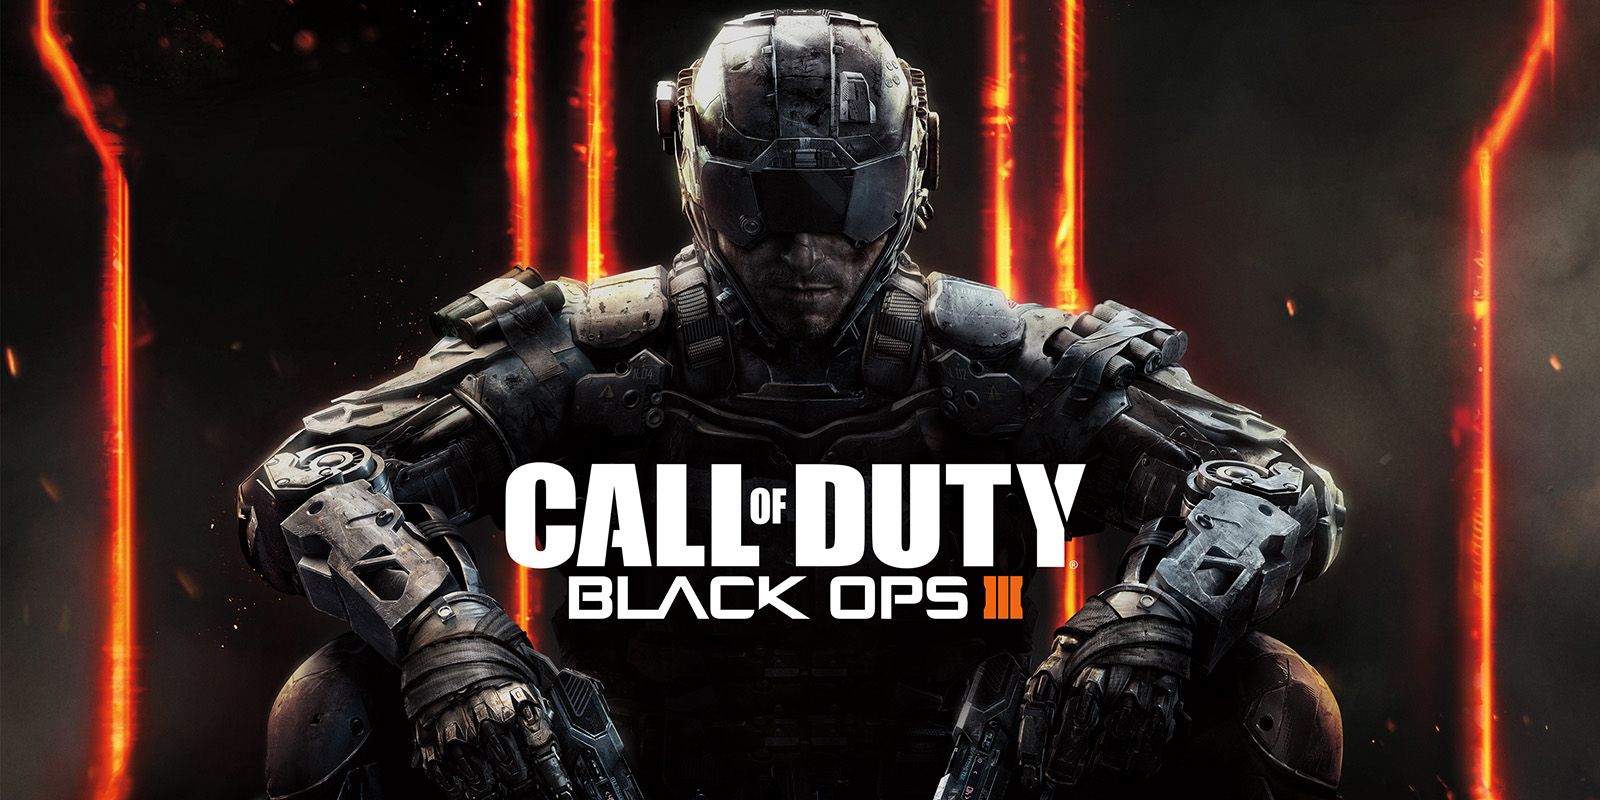 Call of Duty: Black Ops III Trailer Has Dystopian & Cyberpunk Elements